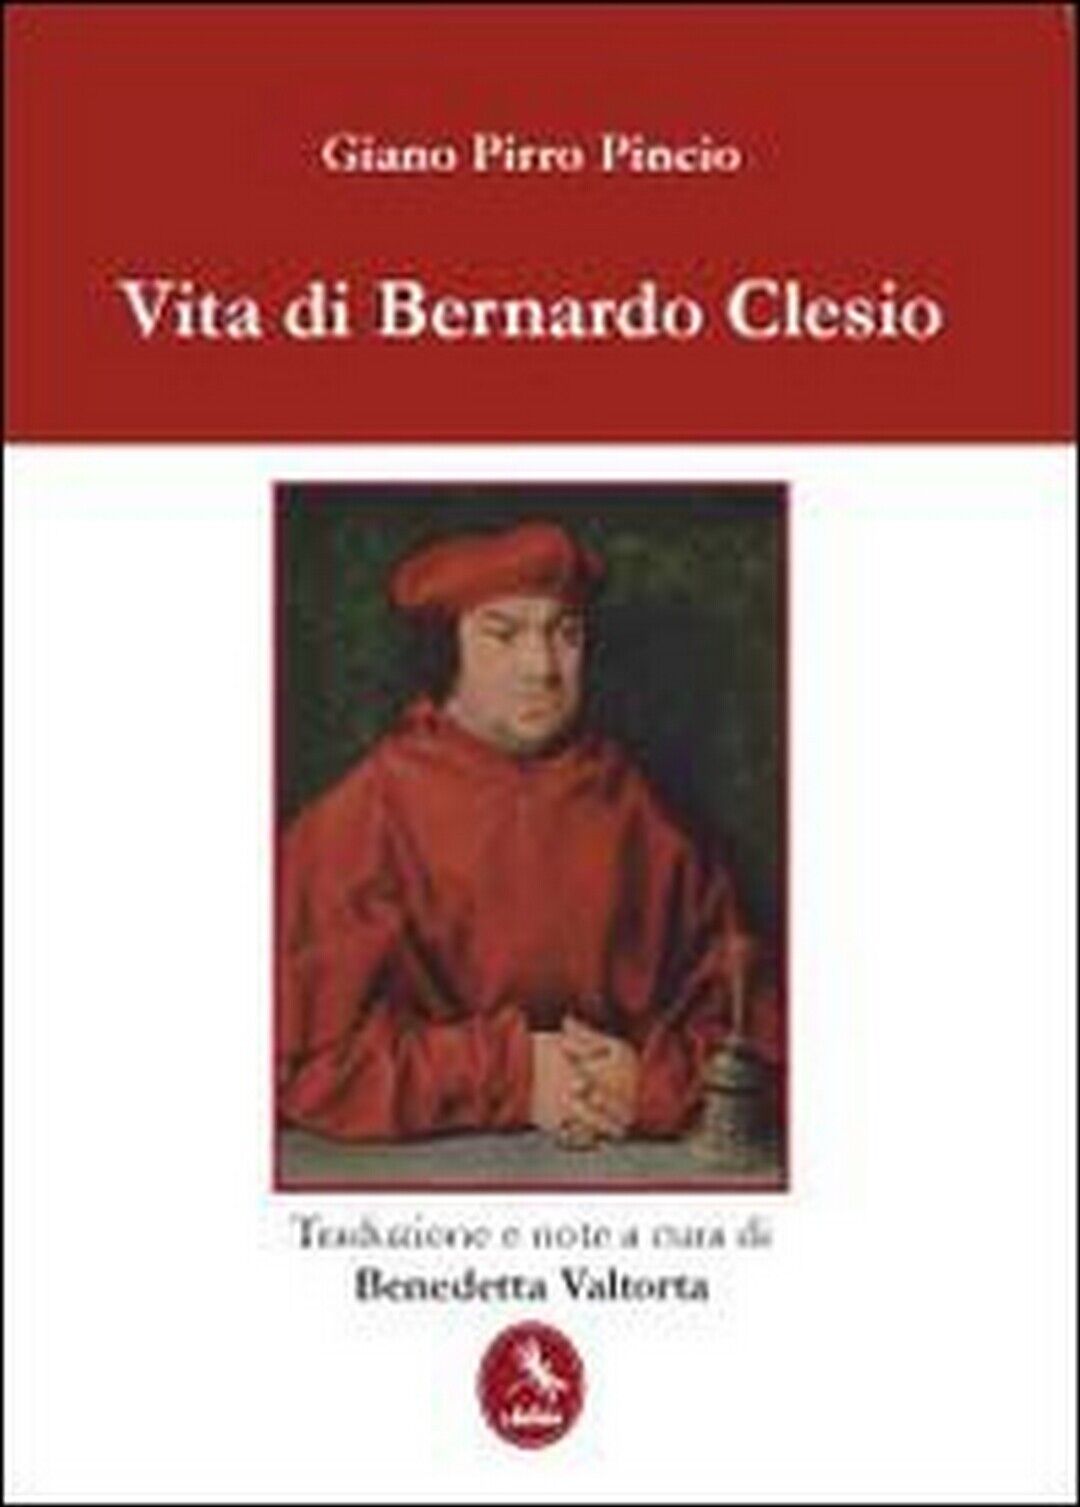 Vita di Bernardo Clesio  di Giano Pirro Pincio,  2012,  Libellula Edizioni